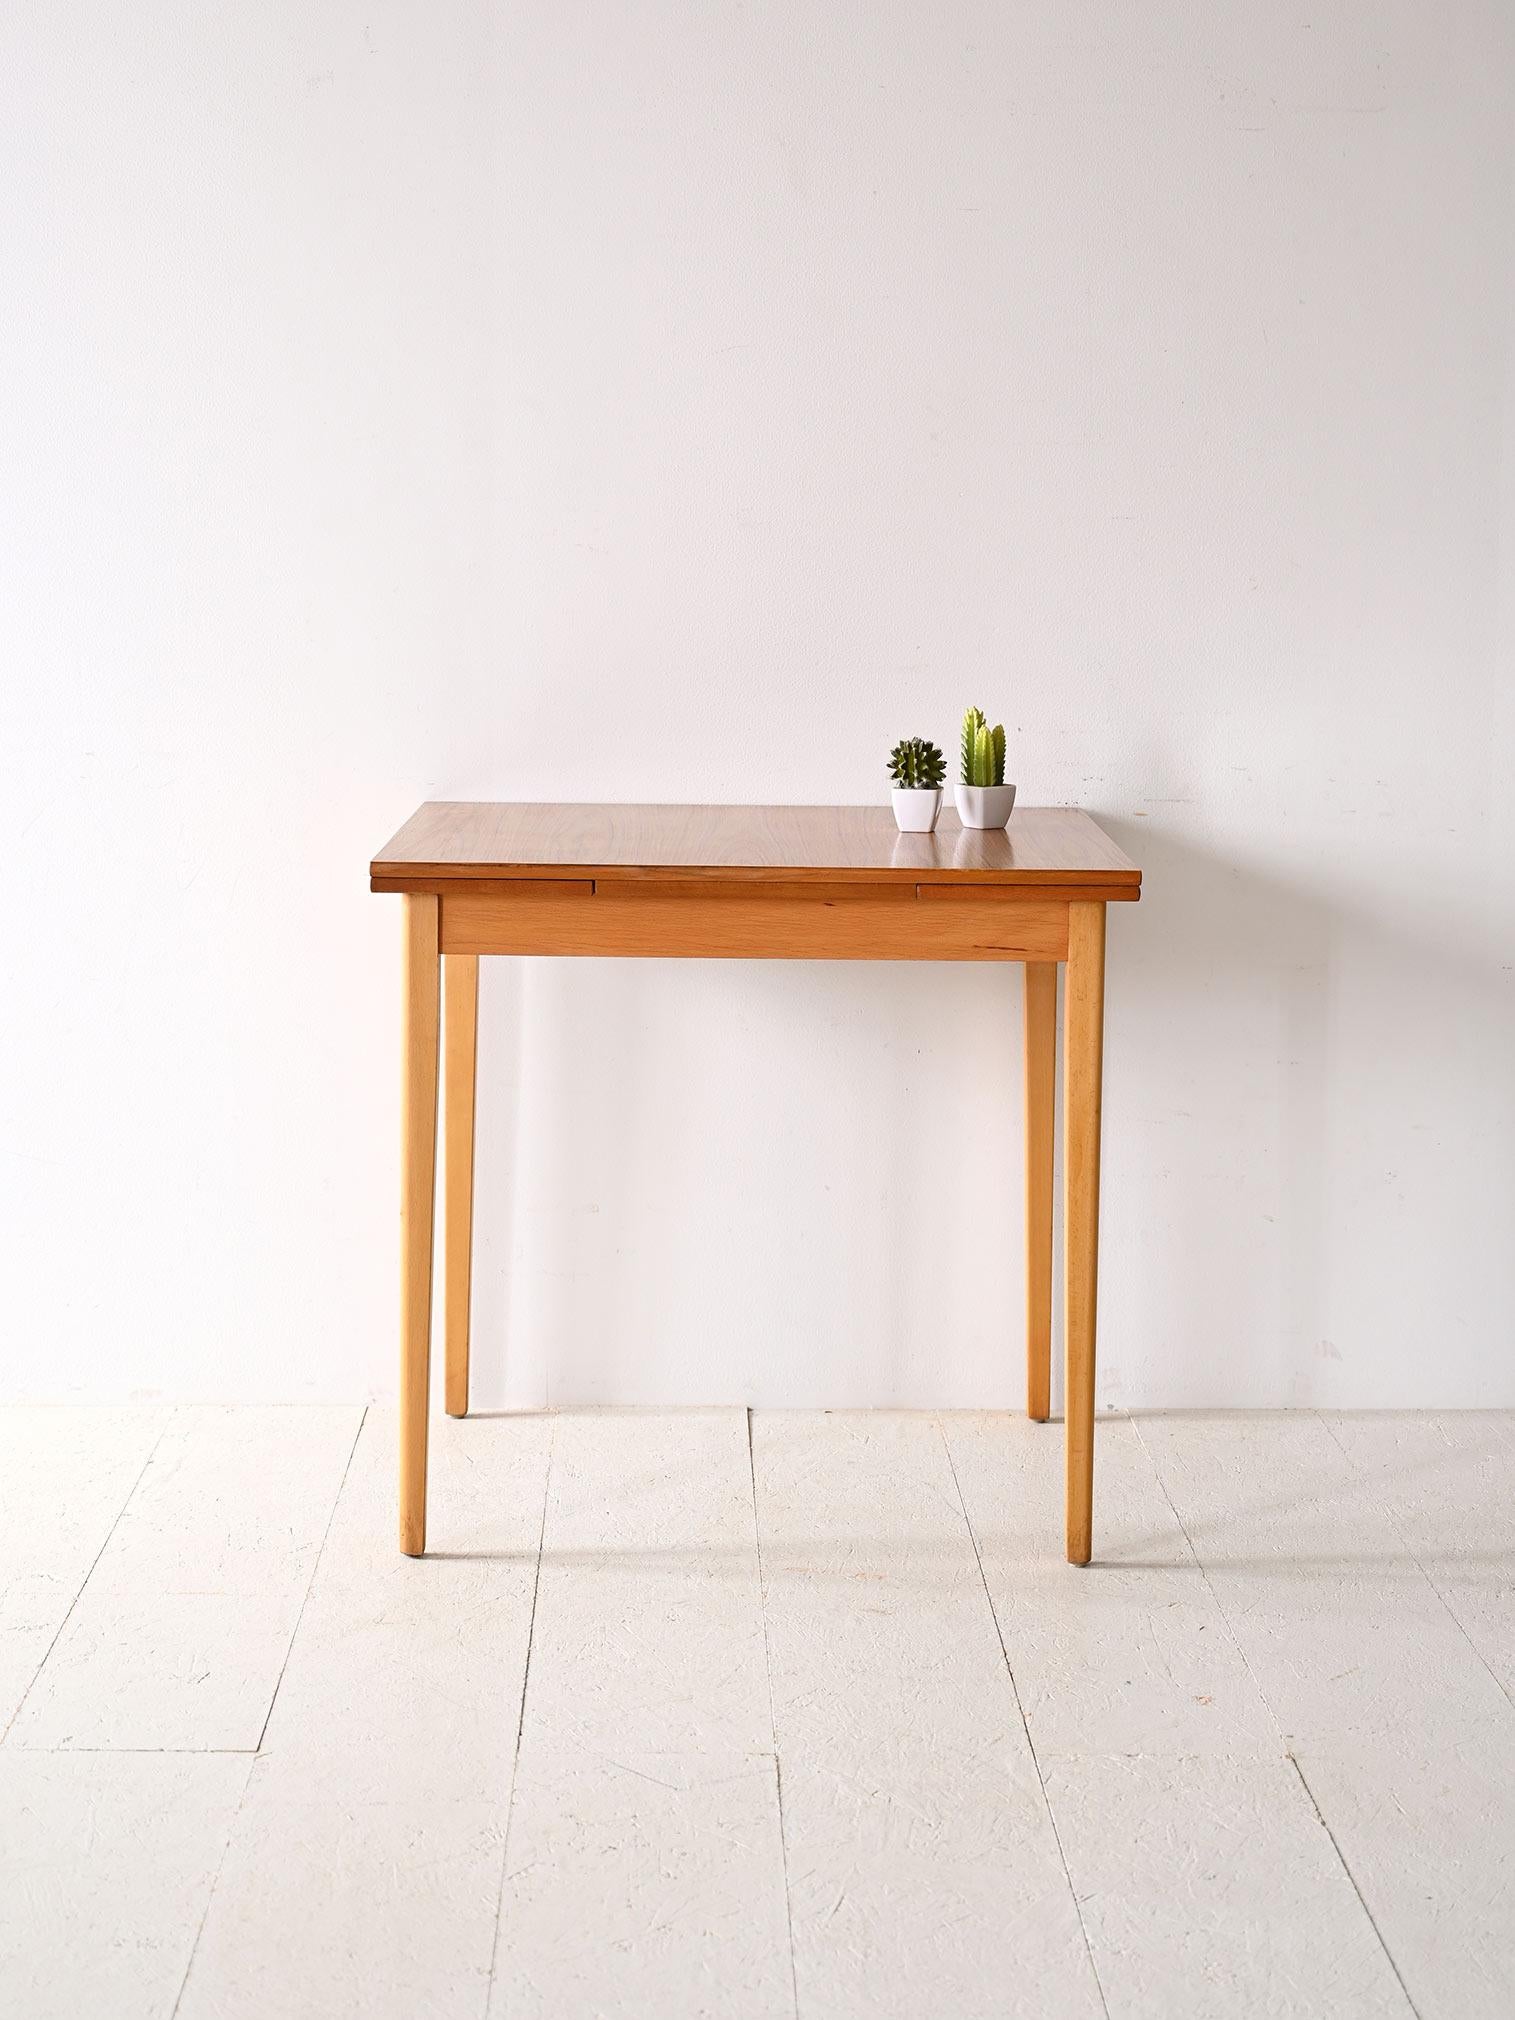 Holztisch aus den 1950er Jahren mit Formica-Platte.

Dieses Vintage-Möbelstück nordischer Herkunft zeigt den typischen Geschmack und die Funktionalität des skandinavischen Designs. Die tragende Struktur ist aus leichtem Birkenholz gefertigt, während